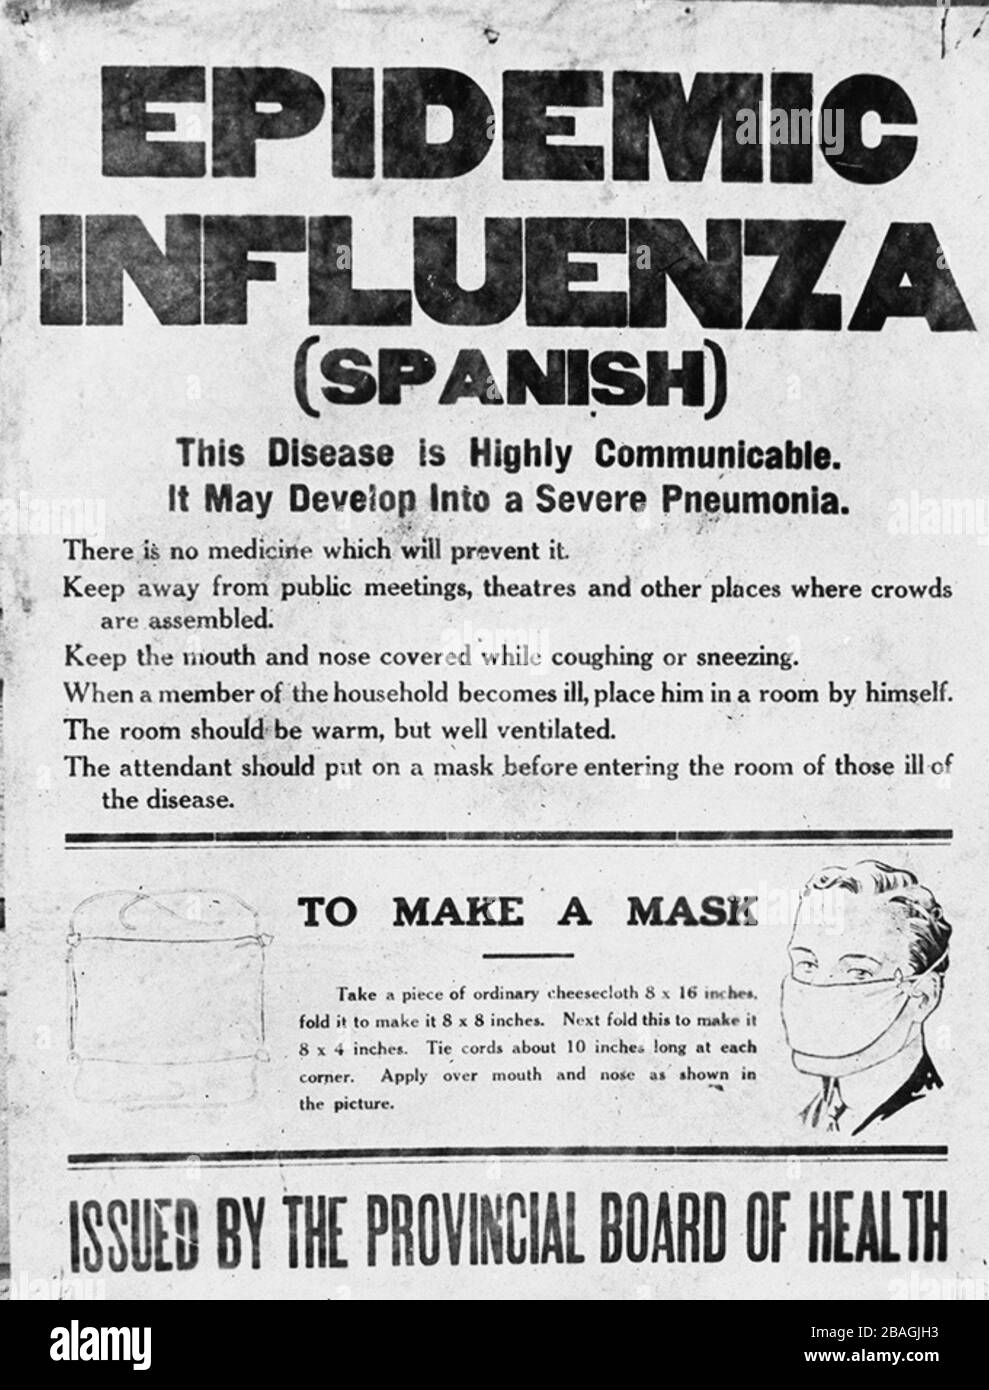 Poster spagnolo dell'influenza. Poster pubblicato dal Provincial Board of Health dell'Alberta che allertano il pubblico dell'epidemia influenzale del 1918. Il poster fornisce informazioni sull'influenza spagnola e istruzioni su come creare una maschera. Foto Stock